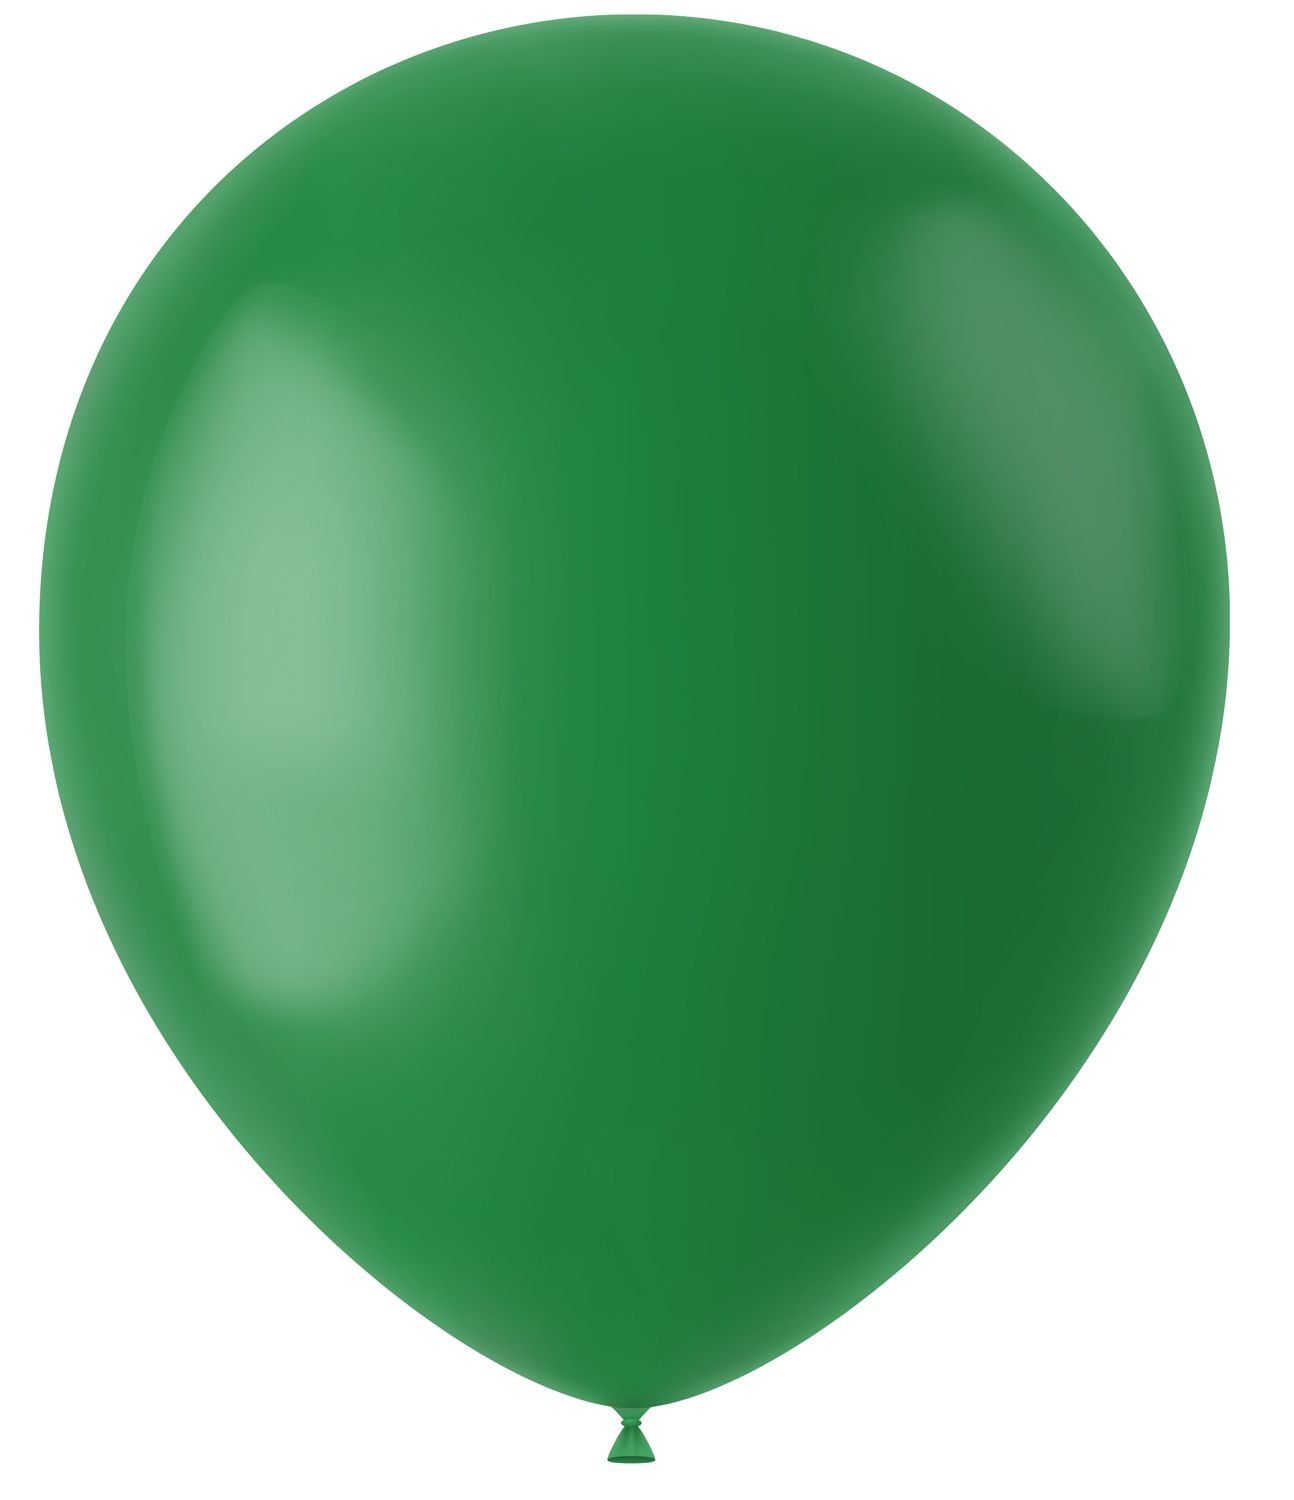 100 ballonnen pine green mat 33cm